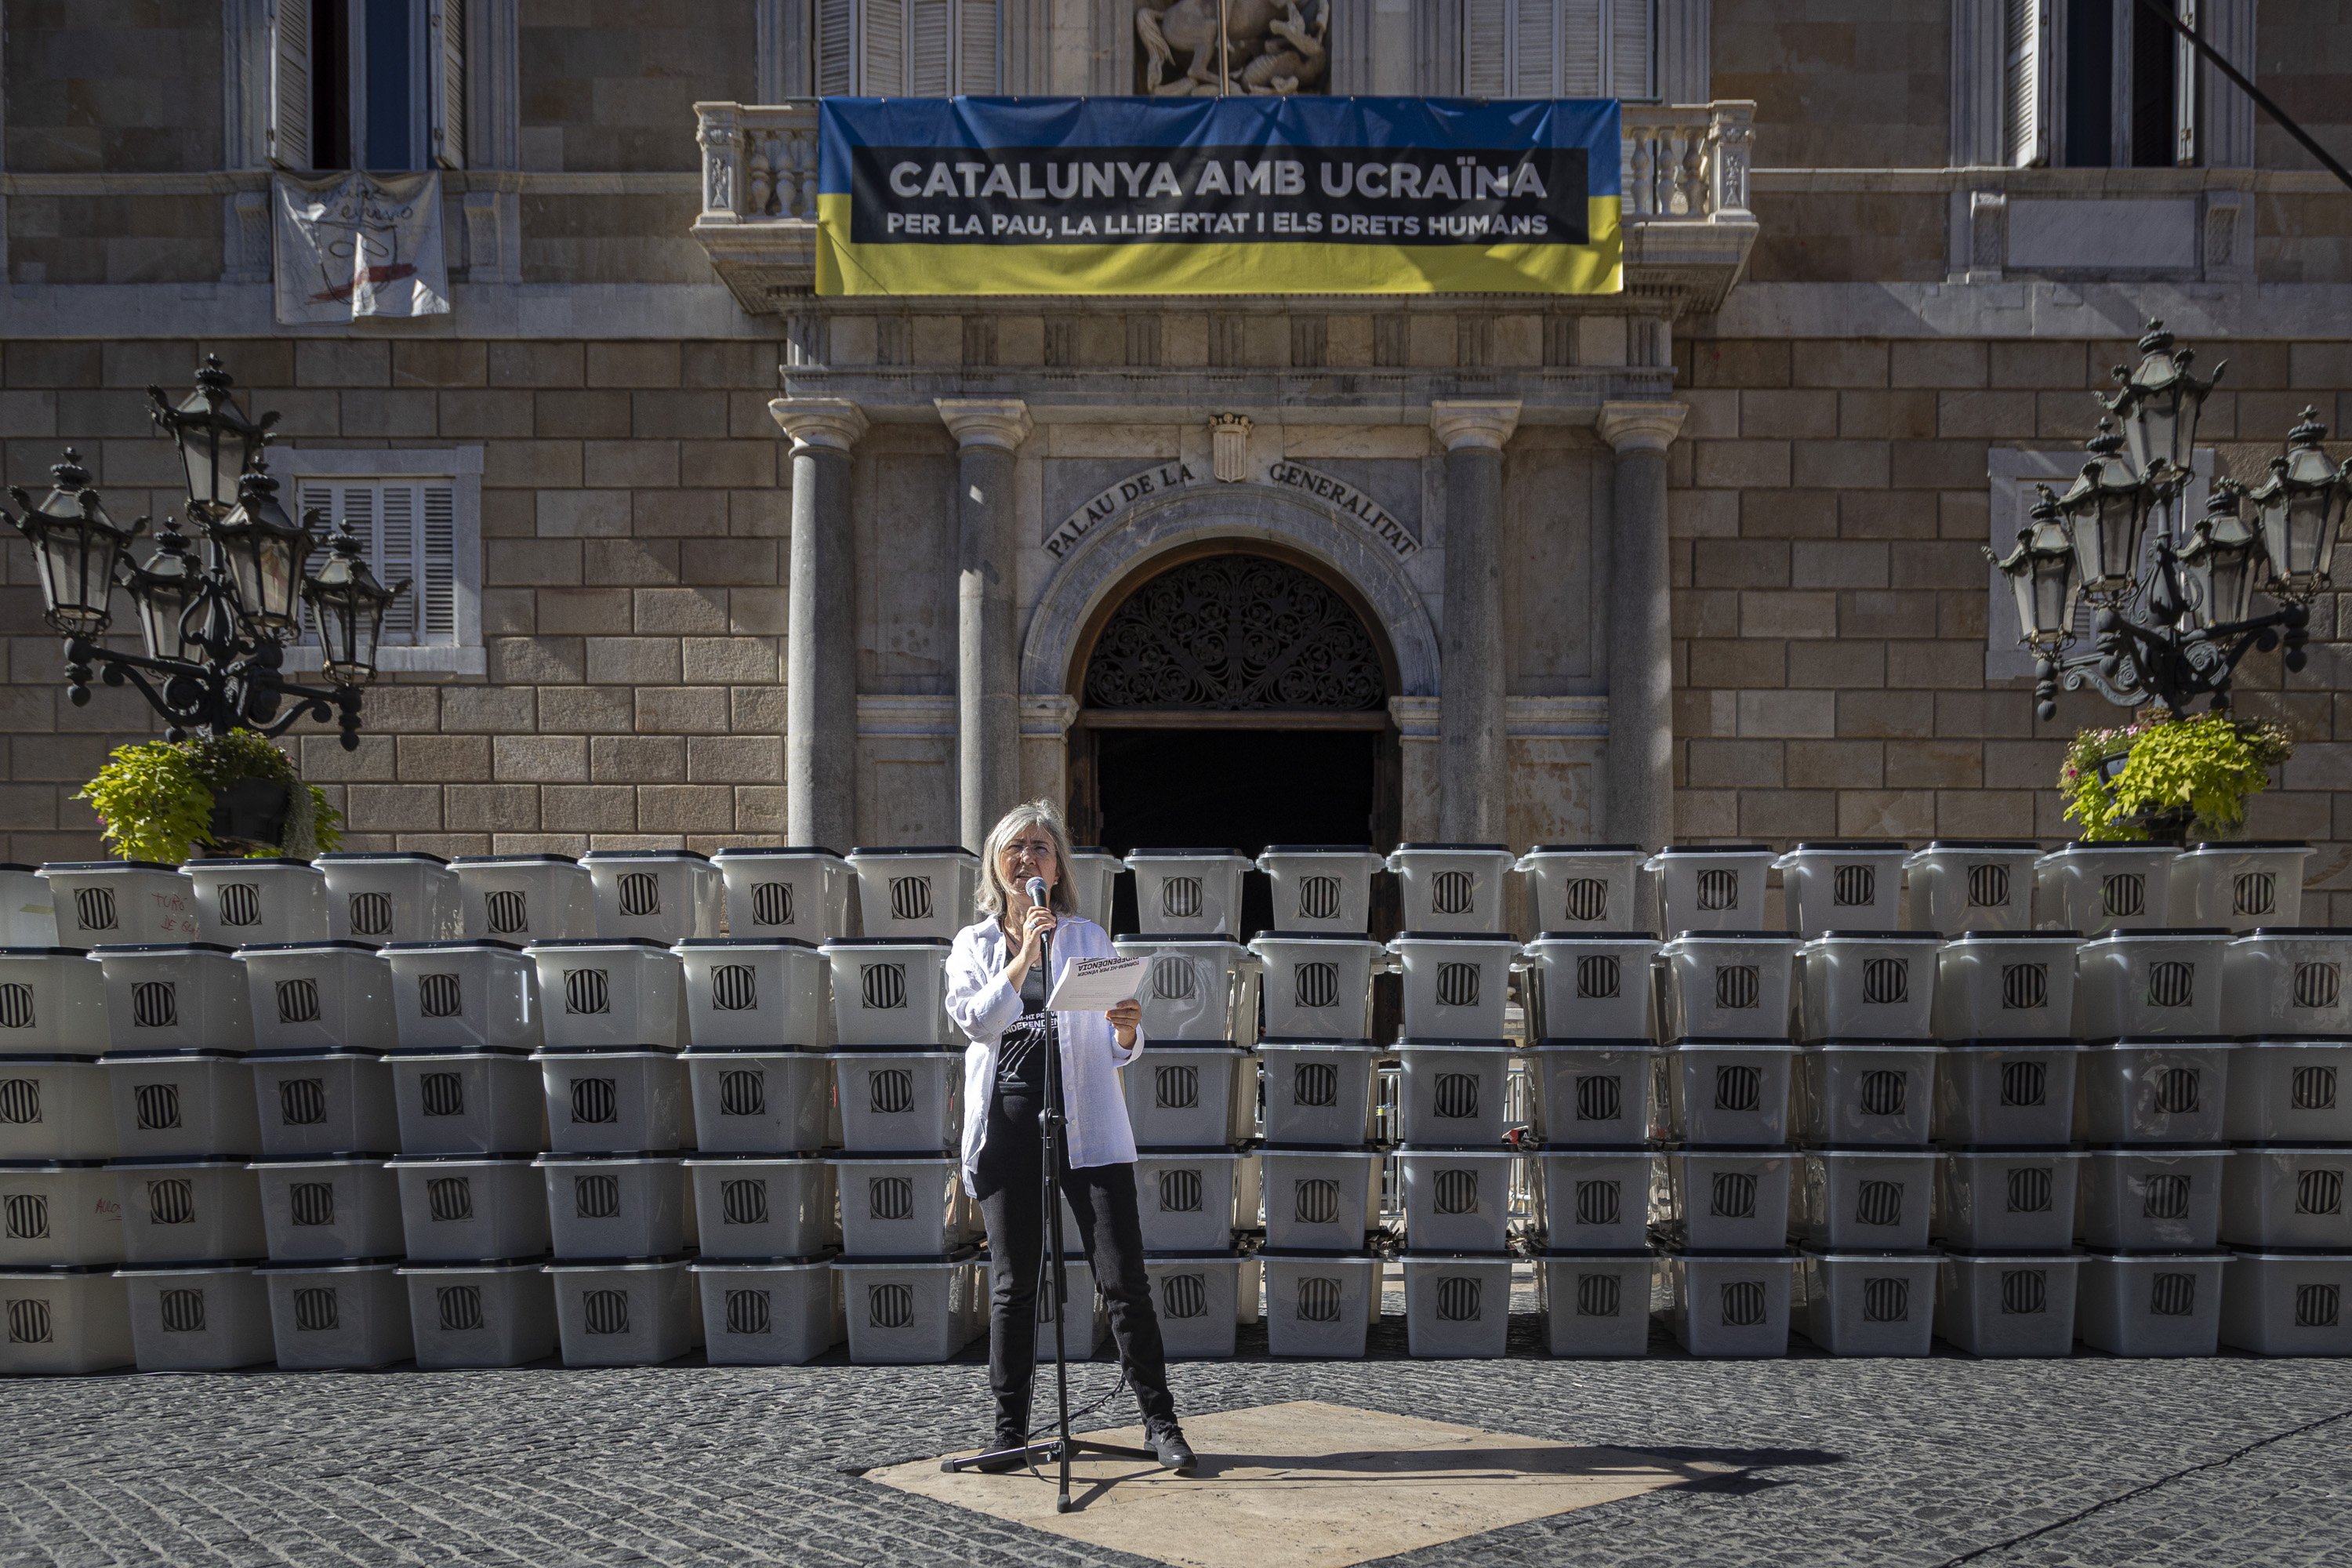 L'ANC reivindica l'1 d'Octubre amb un mur d'urnes davant la Generalitat: "Institucions distanciades del poble"